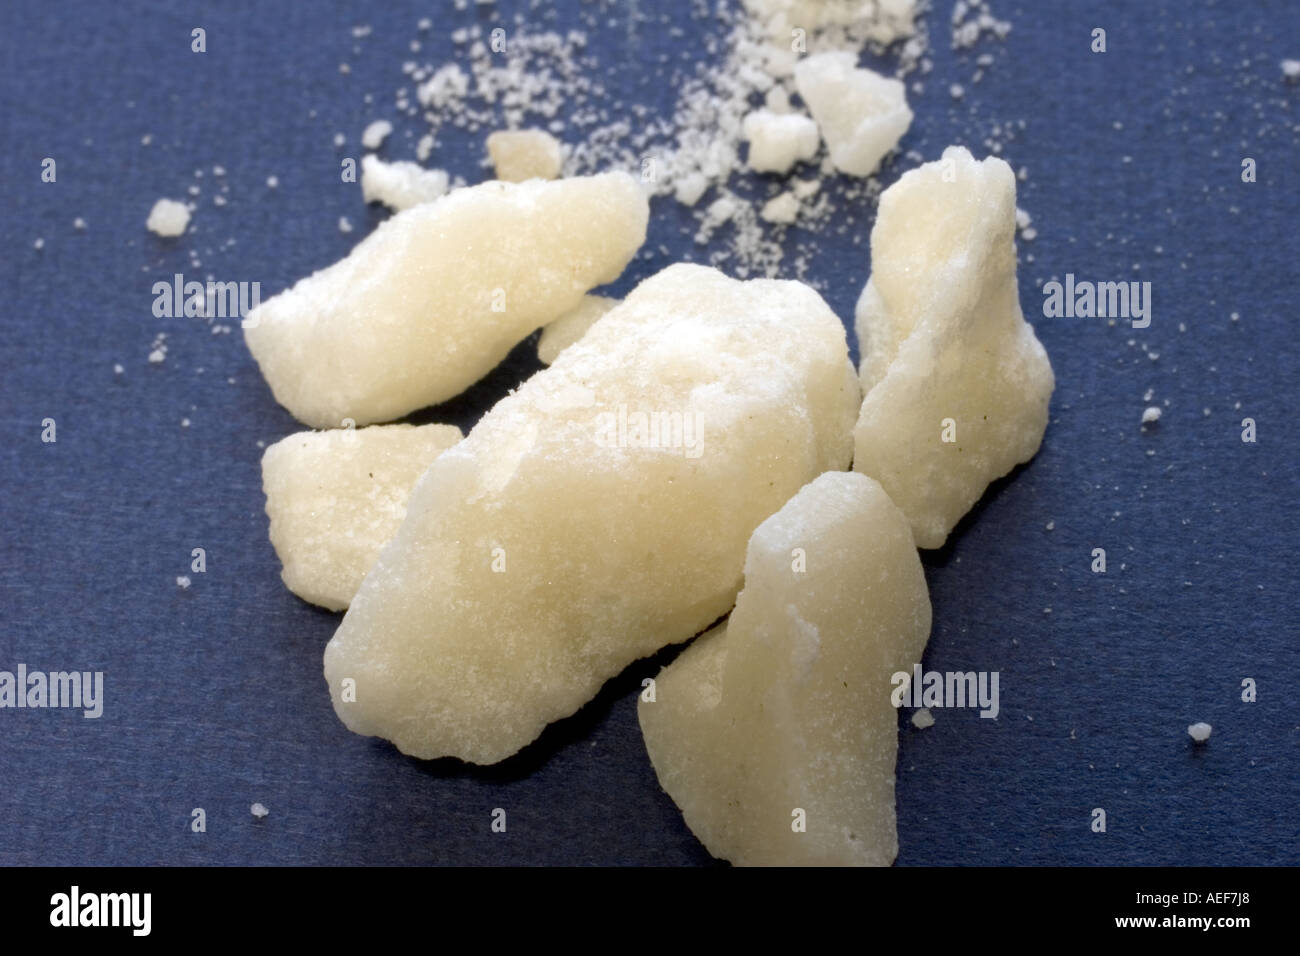 methamphetamine-on-blue-background-AEF7J